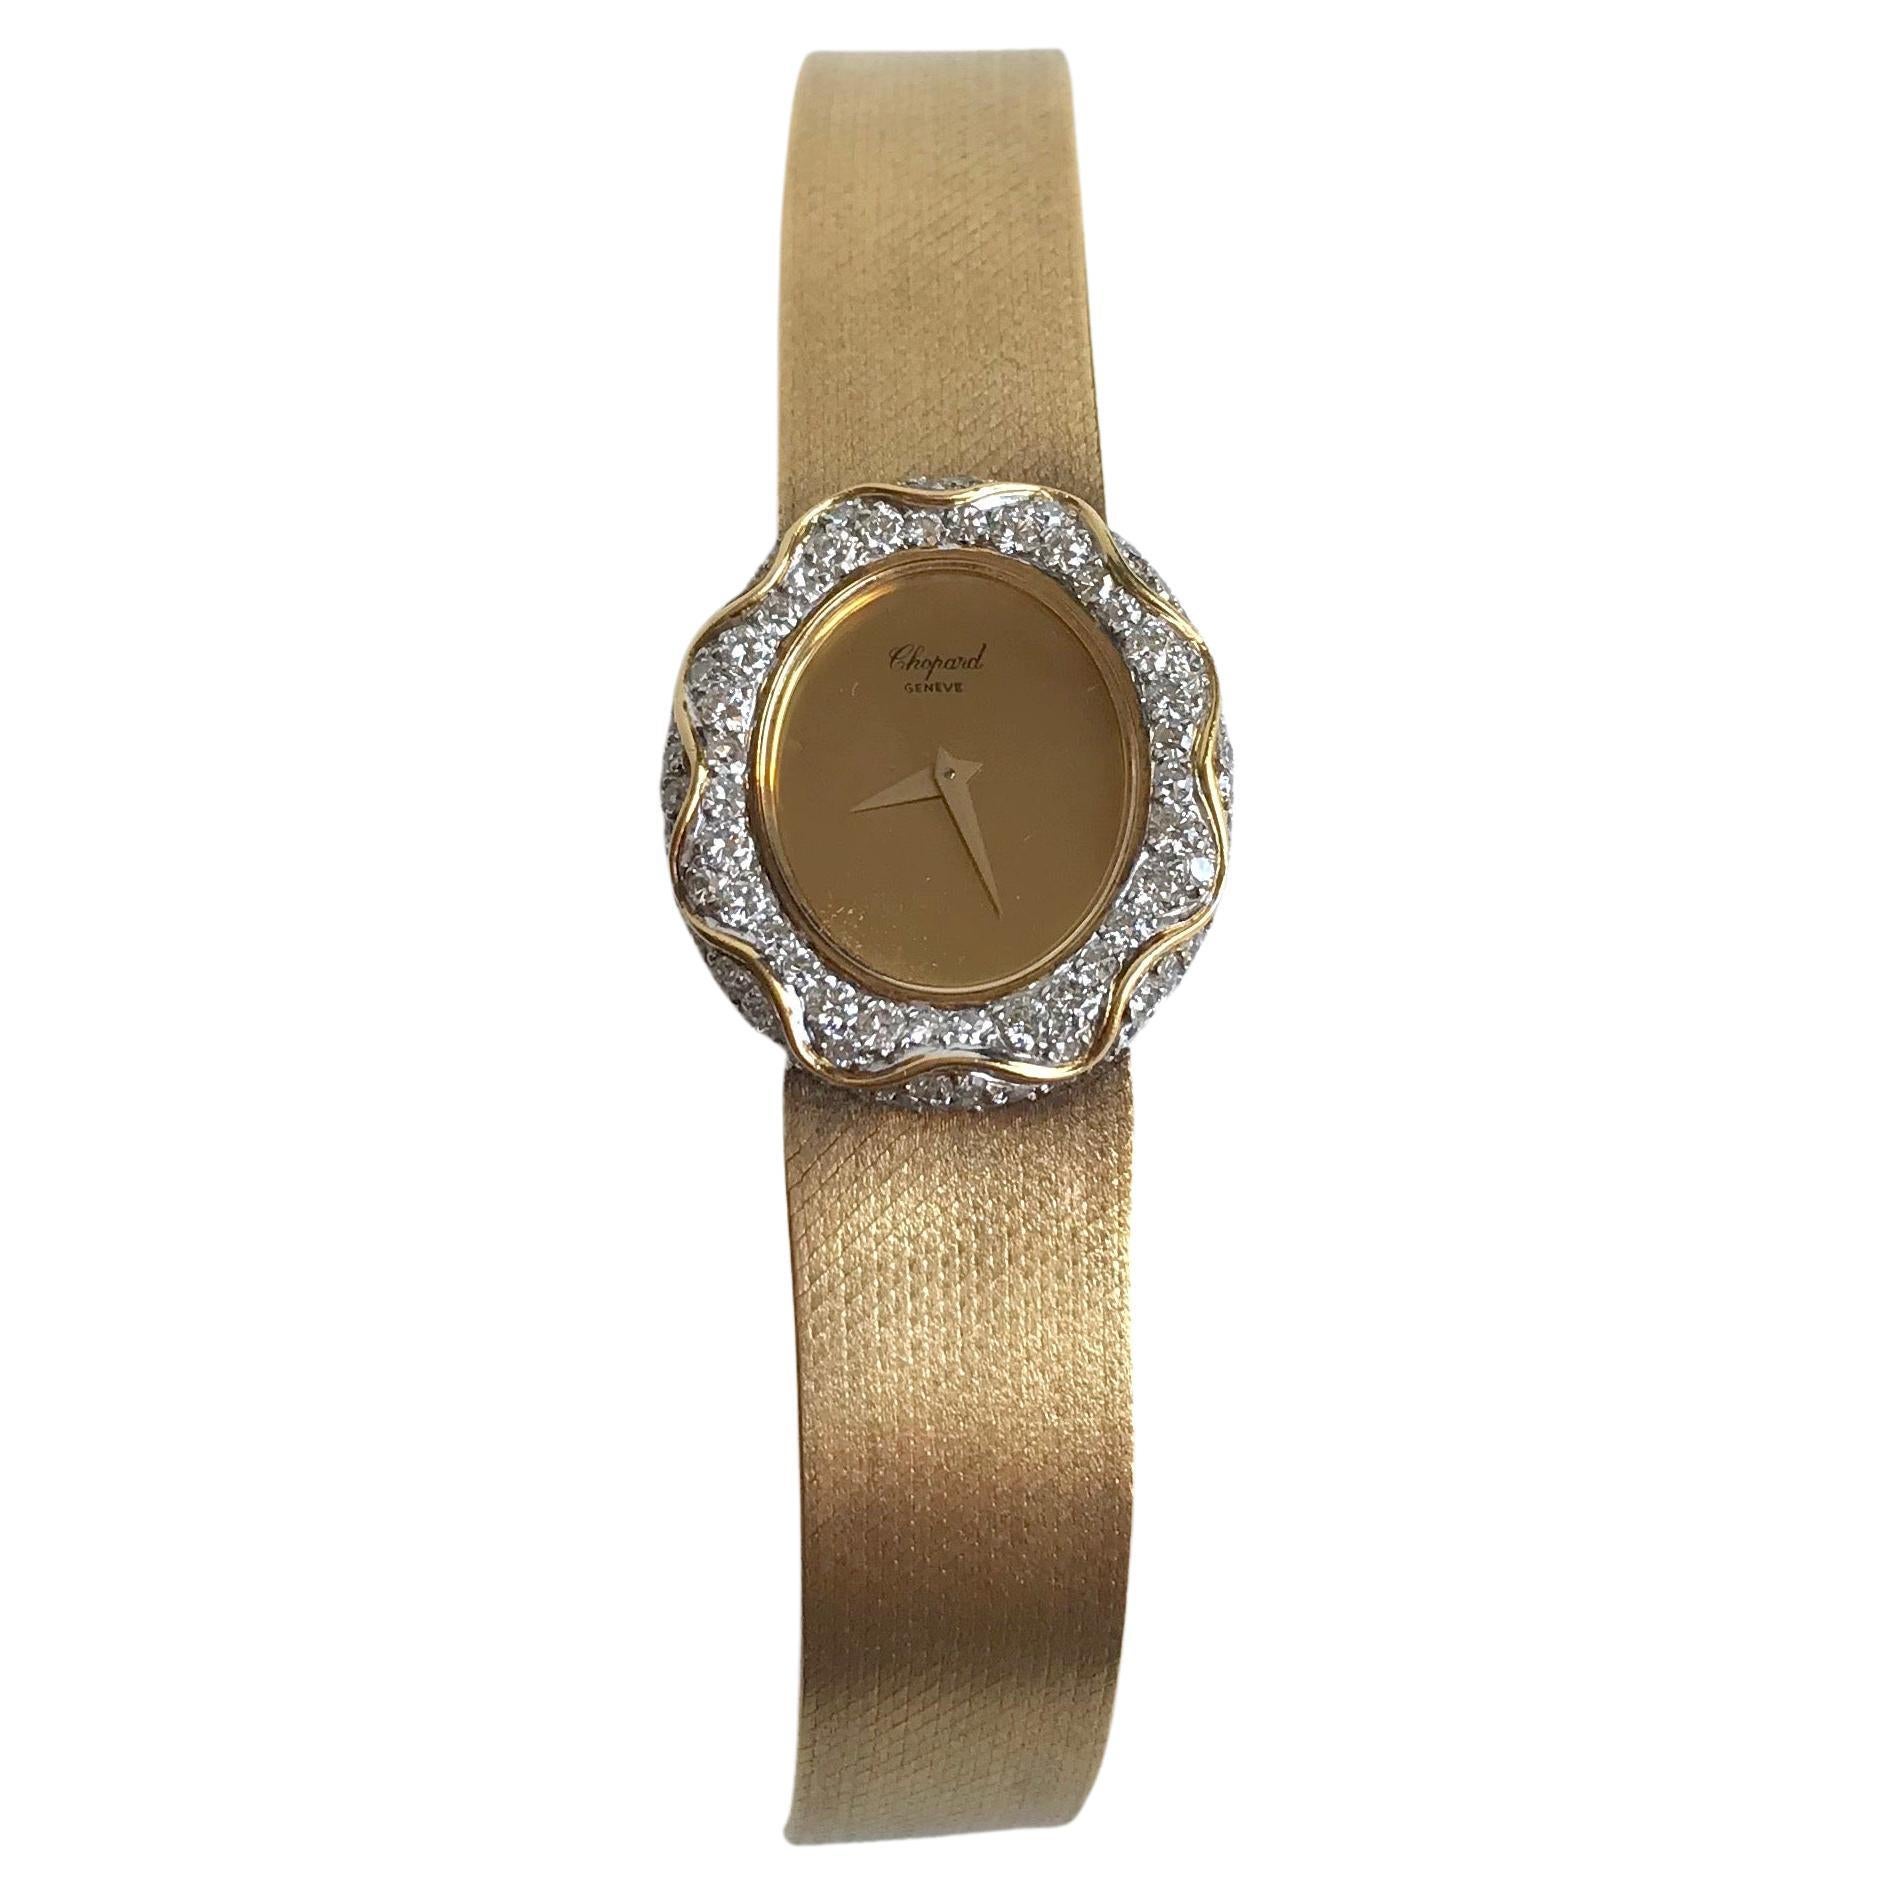 Chopard Kutchinsky Women's Bracelet Watch in 18 Karat Gold Diamonds